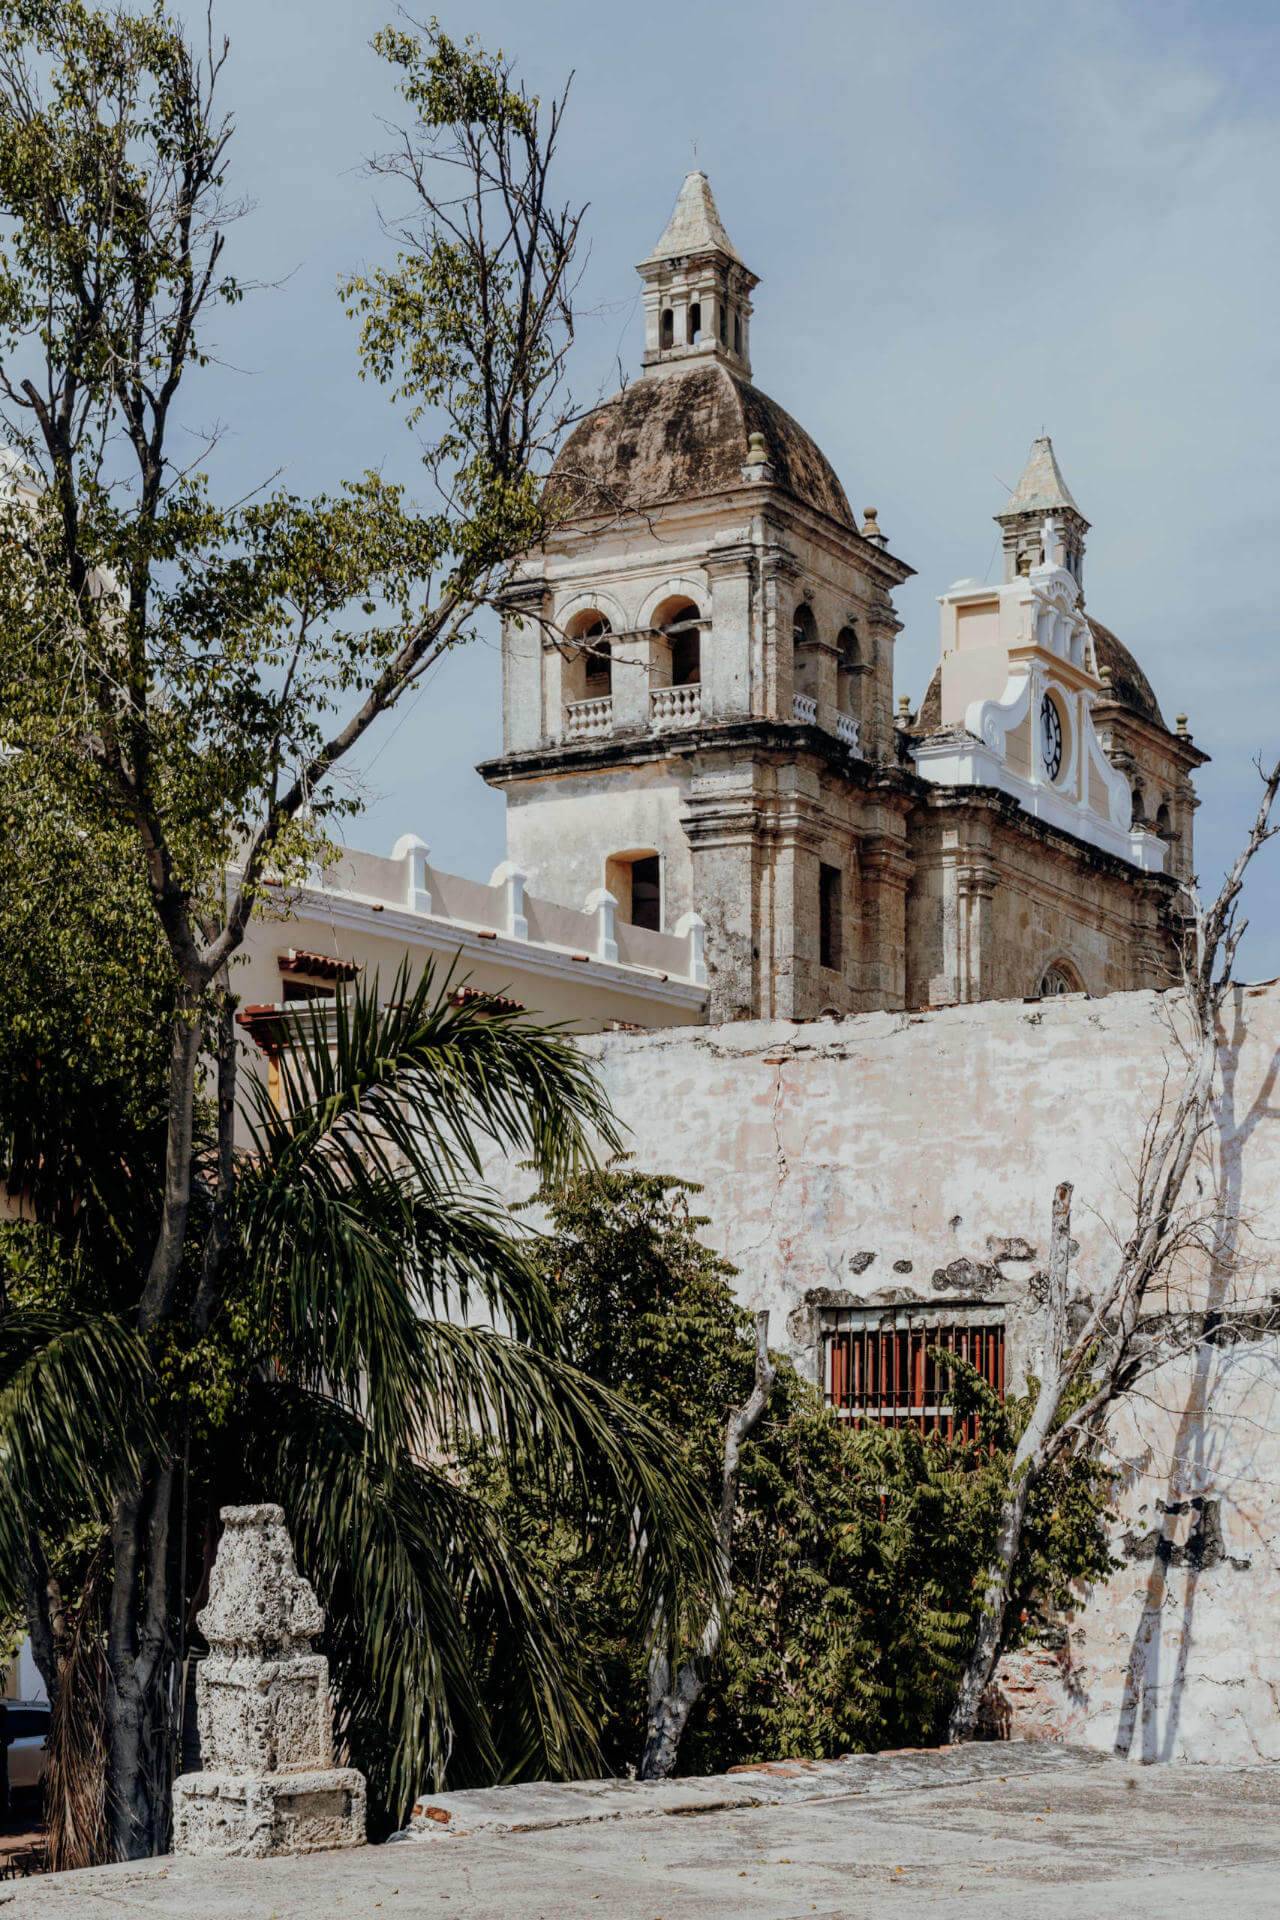 Die Iglesia de San Pedro Claver wurde nach dem Mönch Pedro Claver benannt, der es sich einst zur Aufgabe gemacht hat für die Rechte der schwarzen Bevölkerung zu kämpfen.